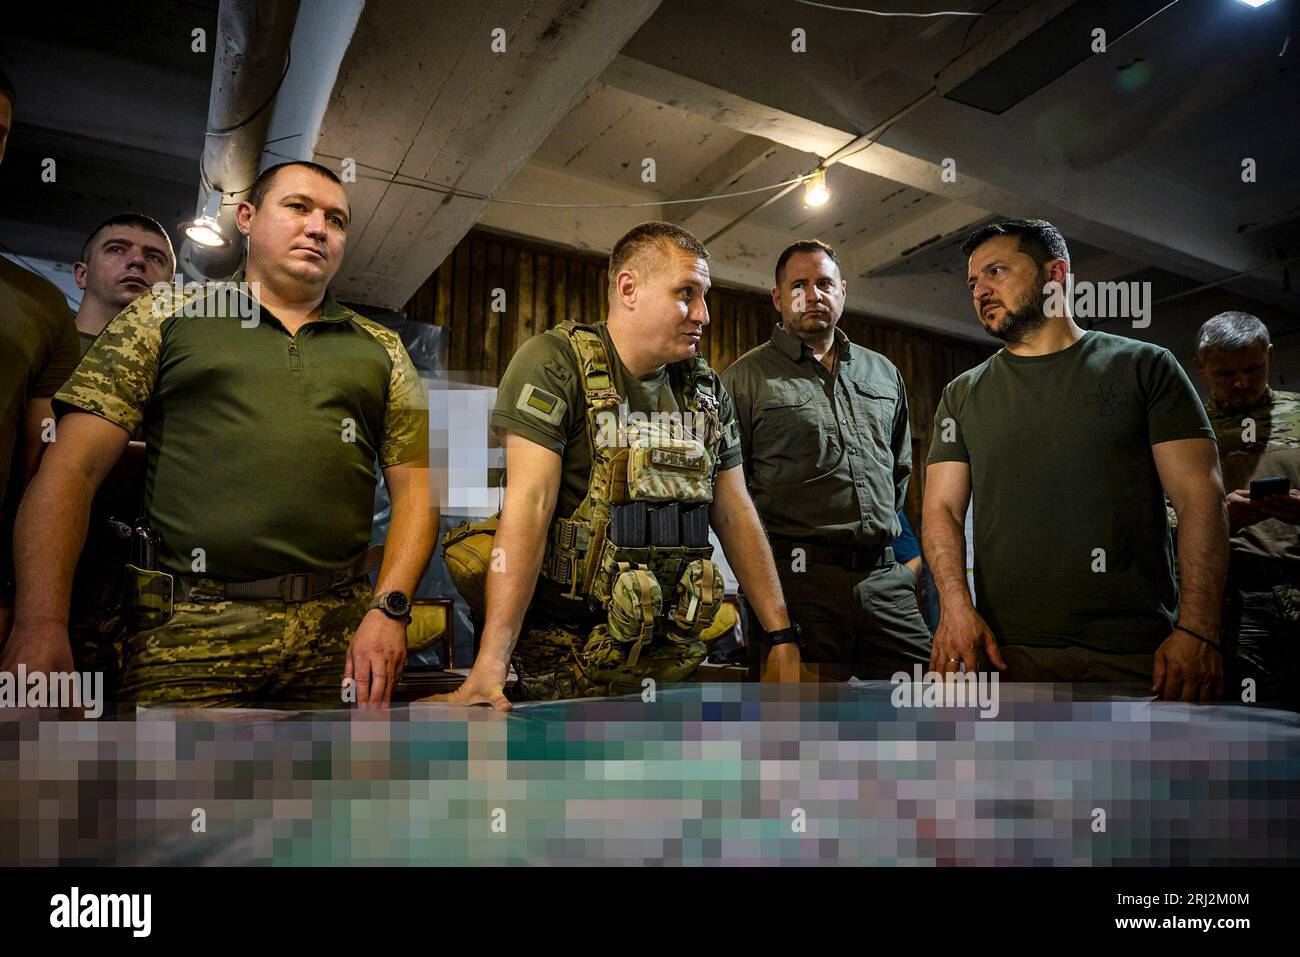 A Donetsk, regione Ucraina, il presidente Volodymyr Zelensky ha visitato il posto di comando principale del gruppo operativo e tattico Soledar e ha conferito medaglie ai difensori dell'Ucraina. (Ufficio presidenziale Ucraina) Foto Stock